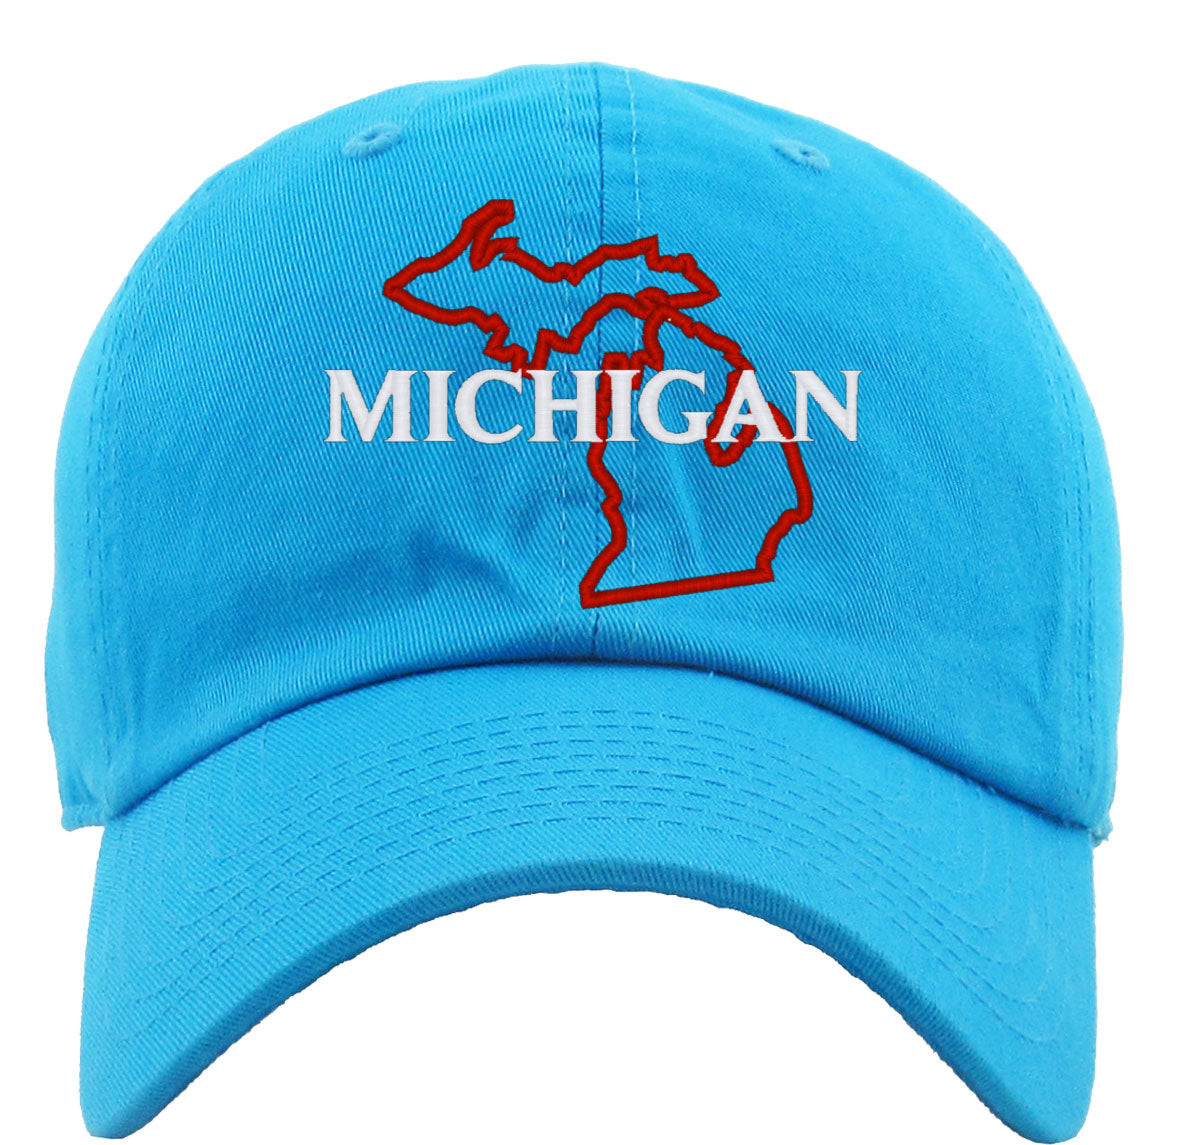 Michigan Premium Baseball Cap